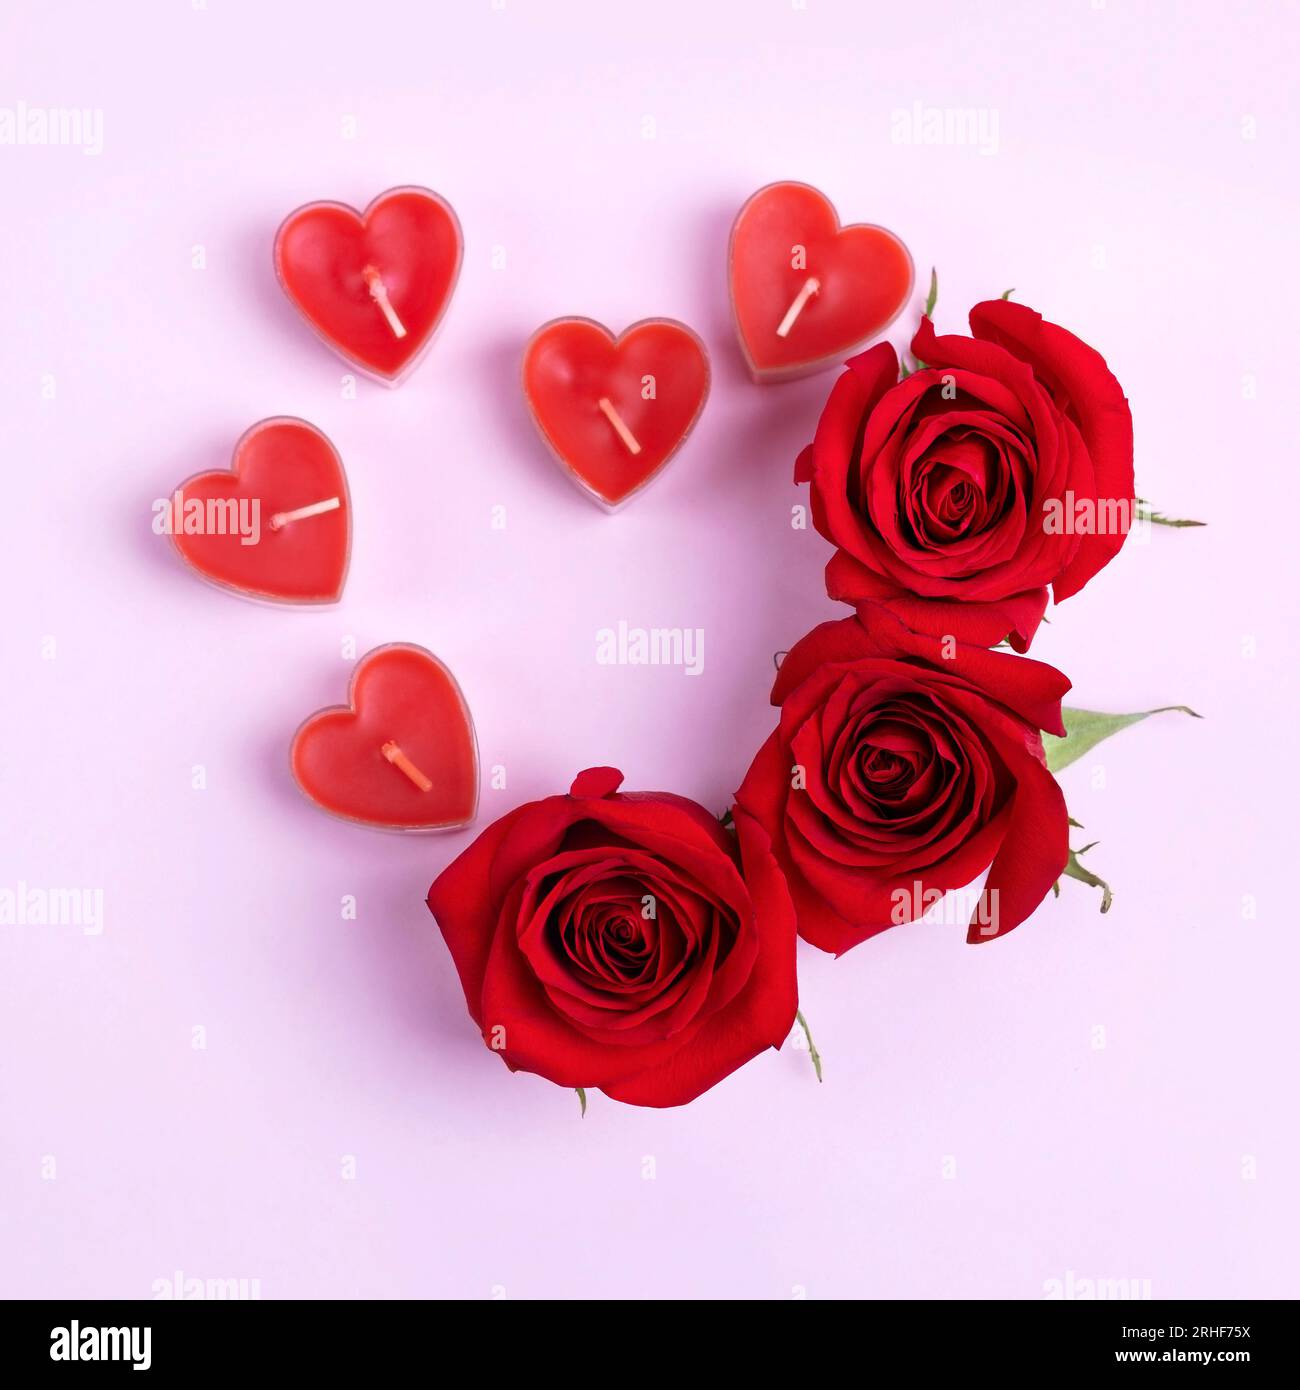 NRRN - Decorazioni a forma di cuore per San Valentino, per San Valentino,  decorazioni romantiche per San Valentino